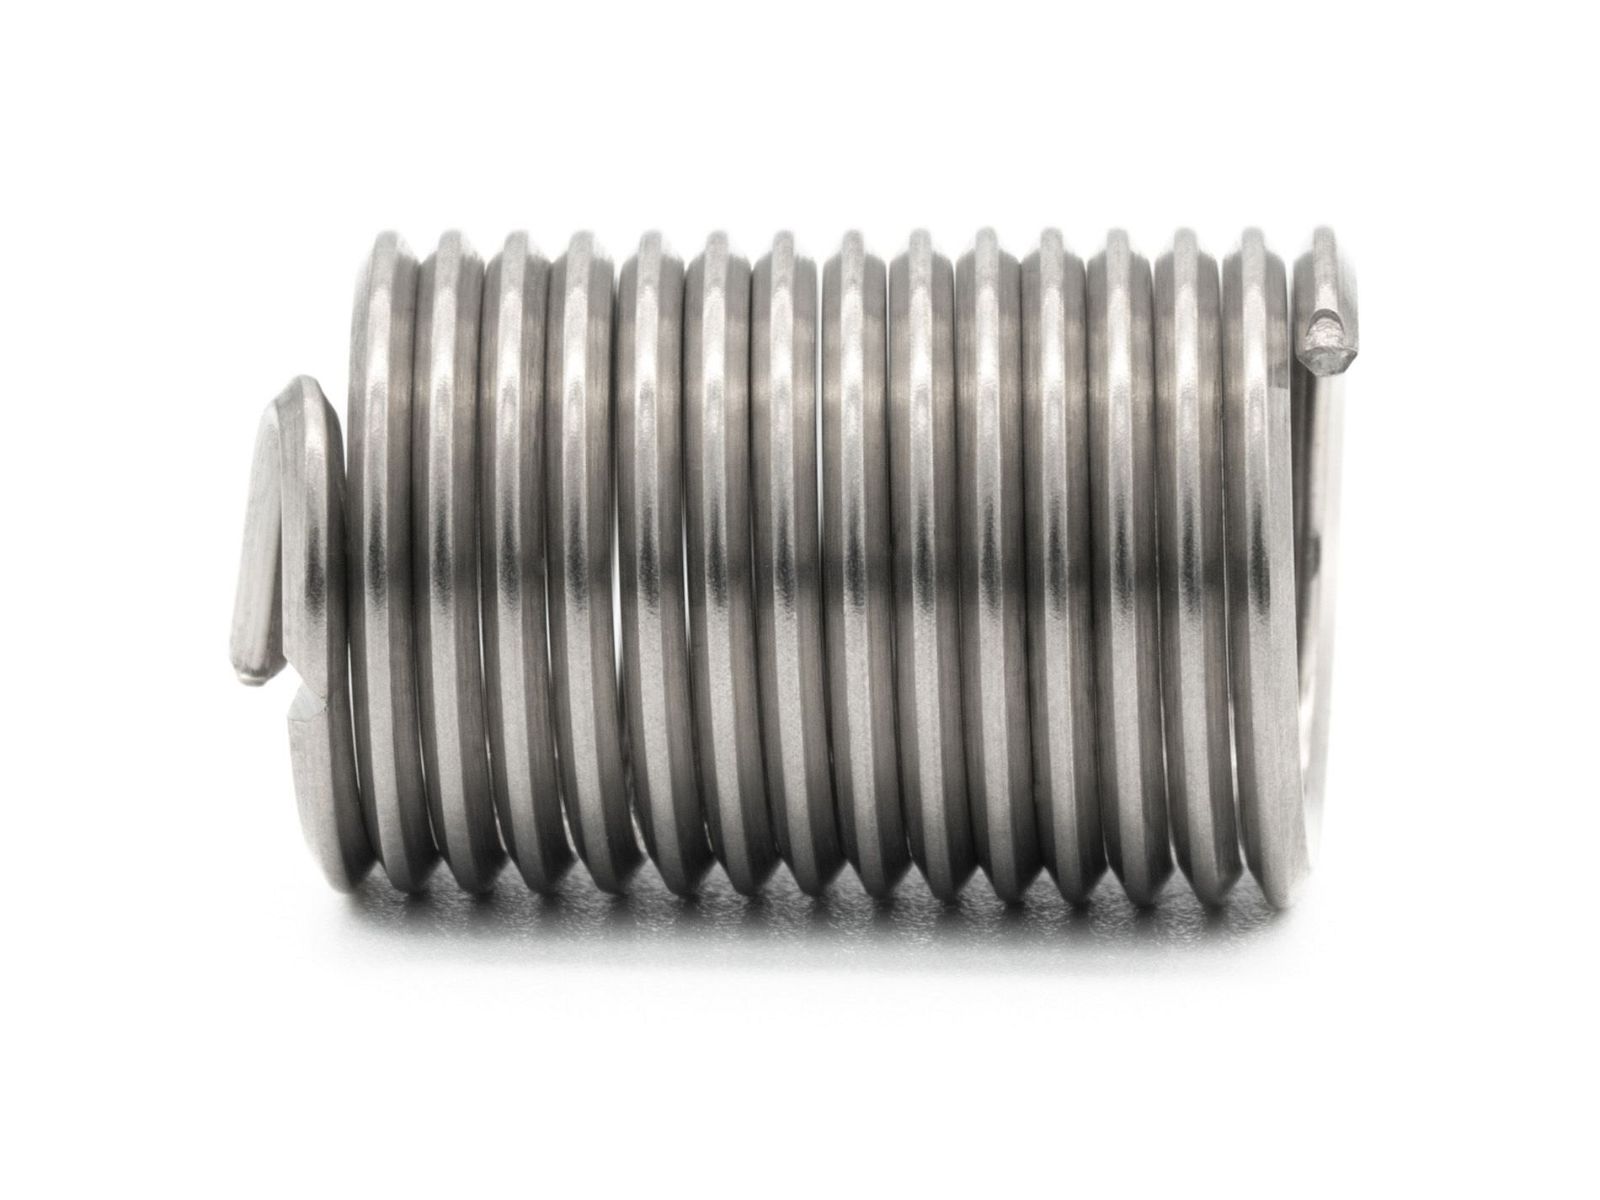 BaerCoil Wire Thread Inserts M 2.5 x 0.45 - 2.5 D (6.25 mm) - free running - 100 pcs.